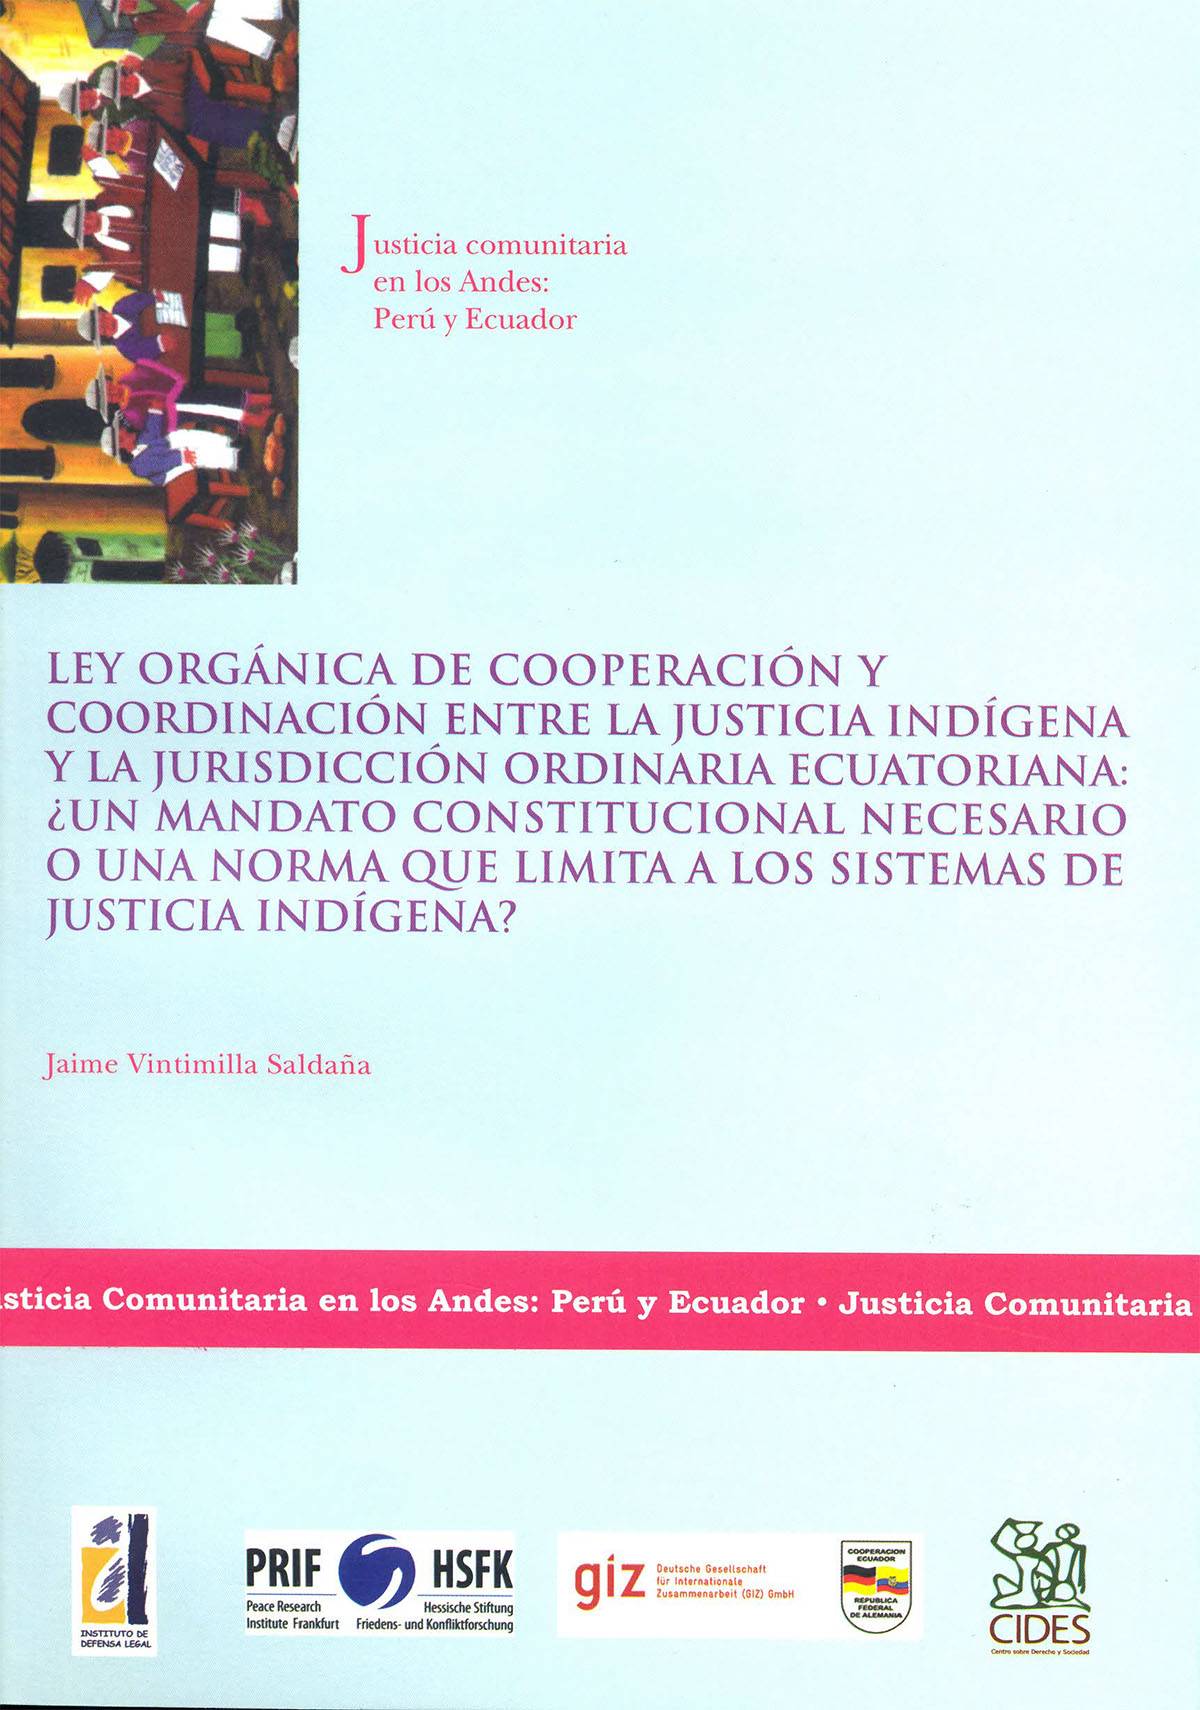 Ley Orgánica de Cooperación y Coordinación entre Justicia Indígena y la Jurisdicción Ordinaria Ecuatoriana